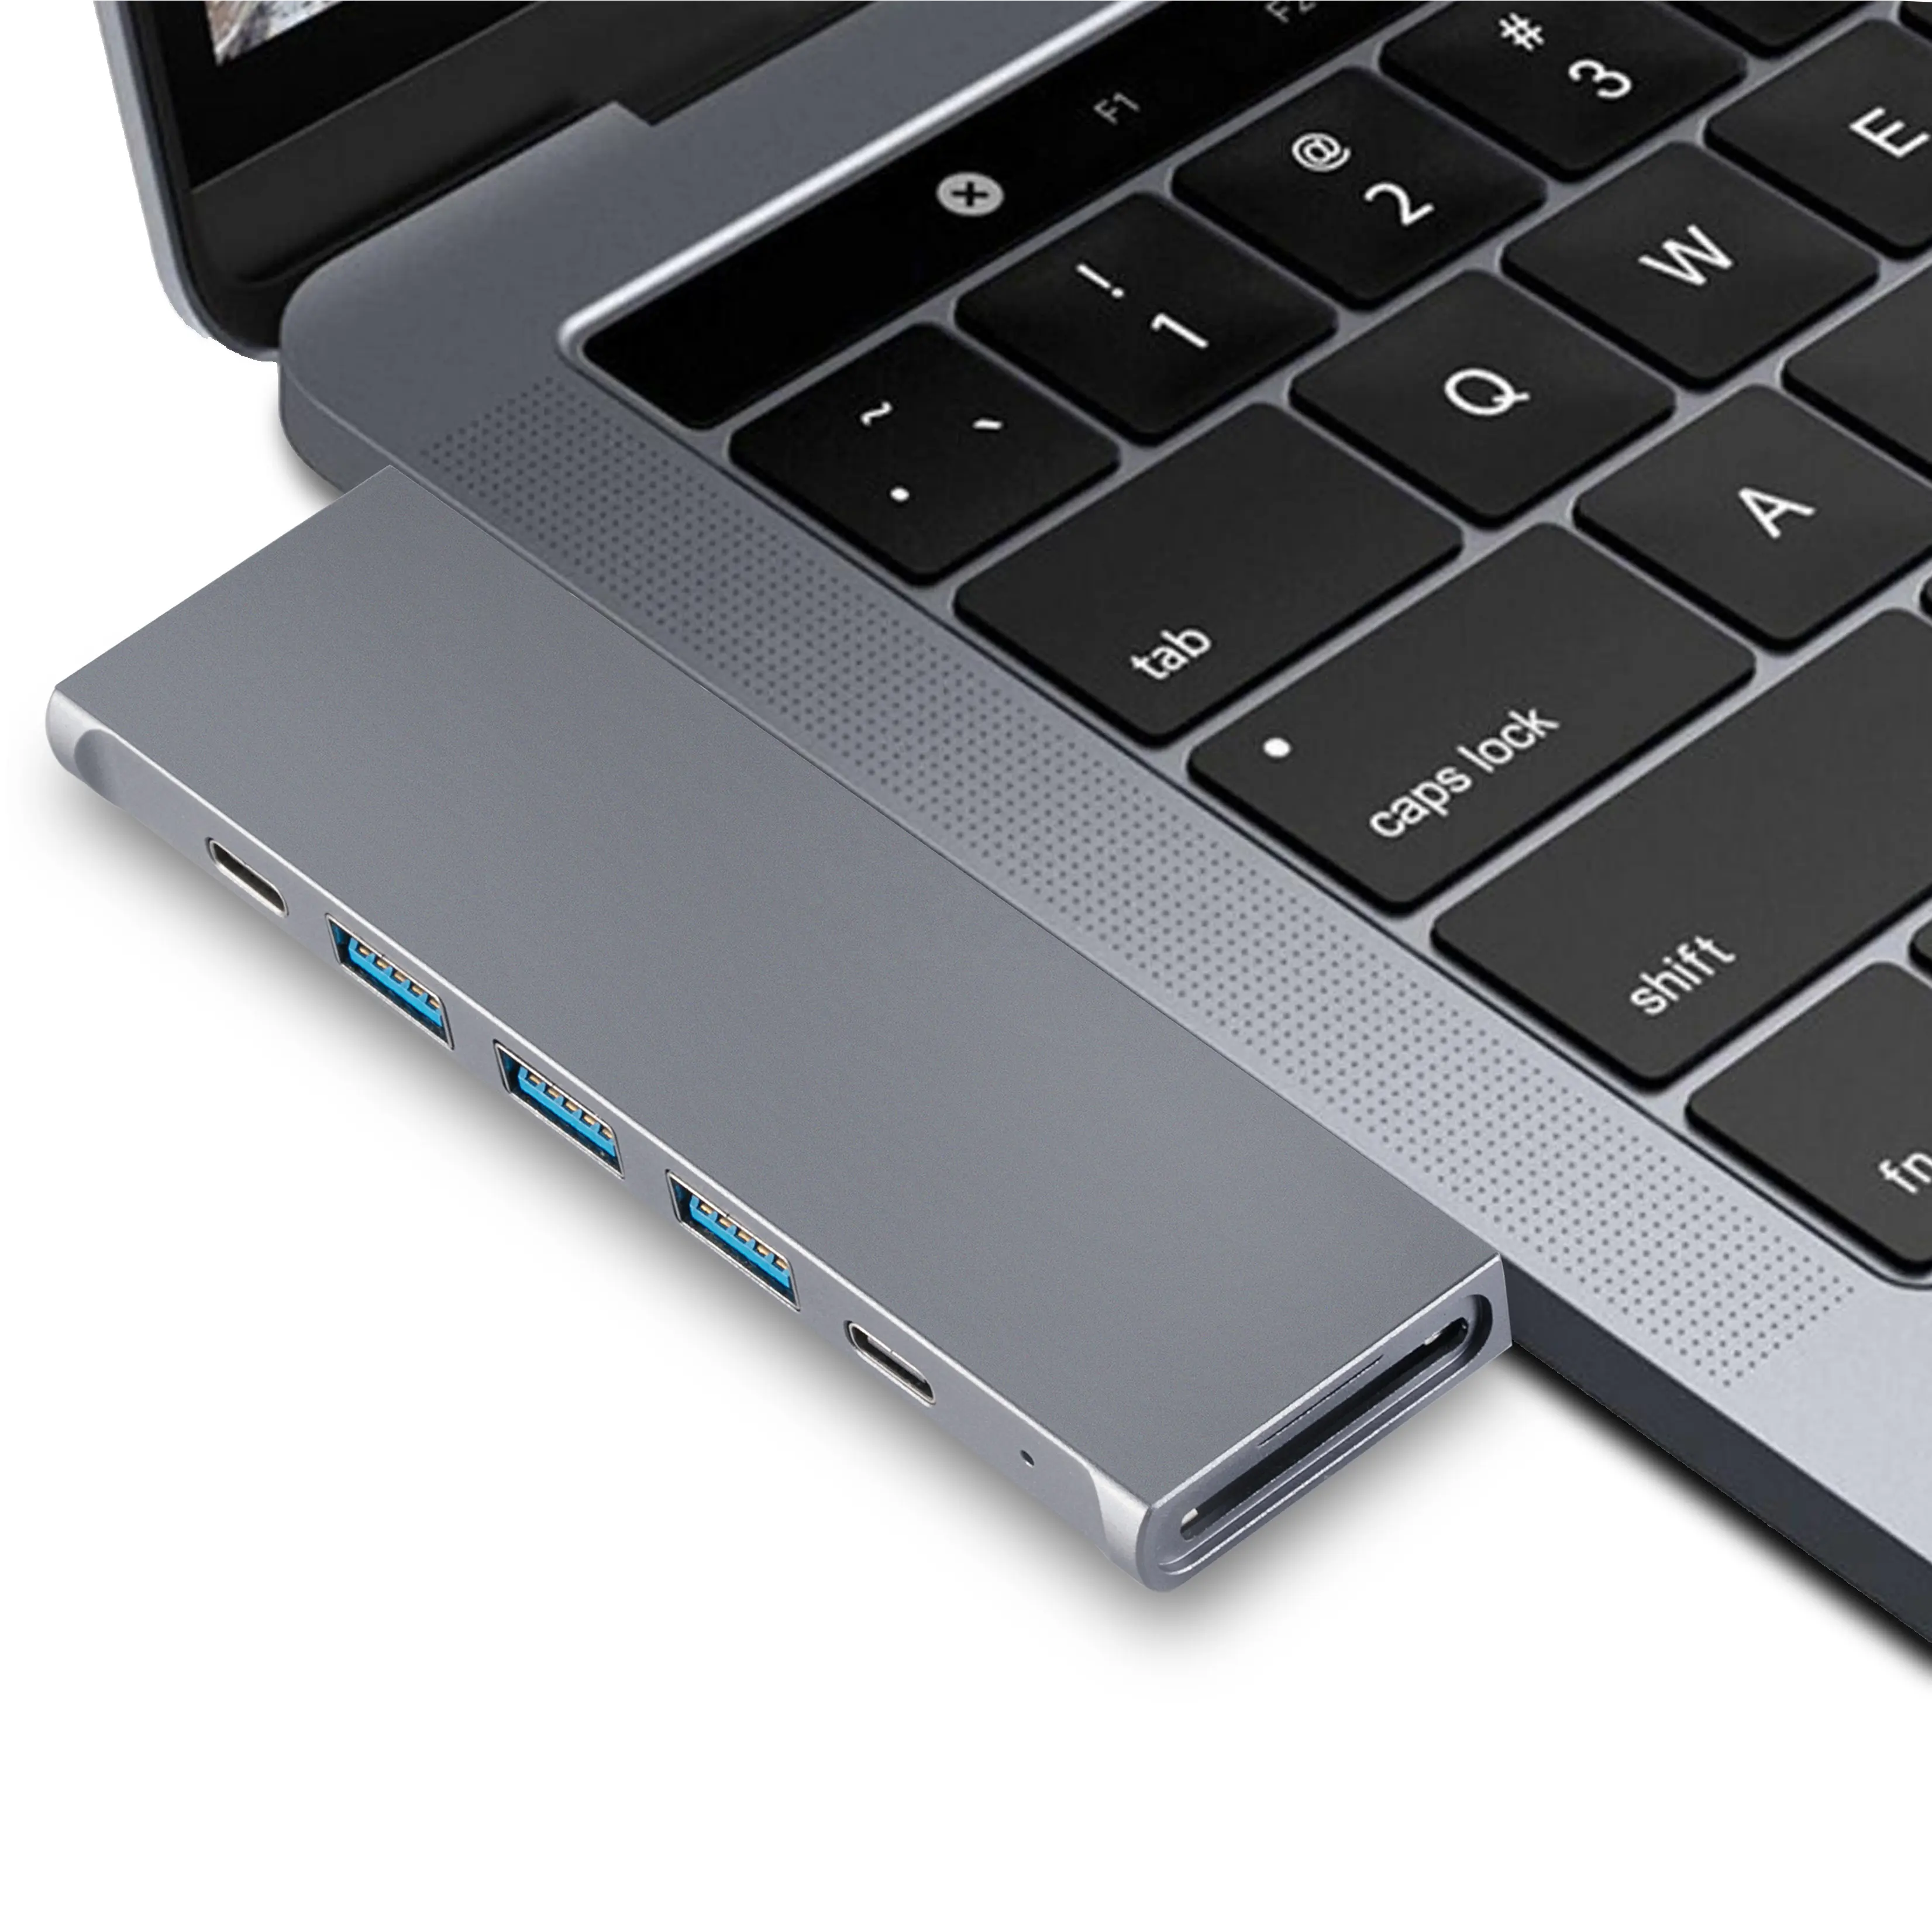 Hızlı kargo 8 in 1 MacBook Pro için USB Hub soket ve USB C adaptörü yerleştirme istasyonu USB bir Hub Thunderbolt 3